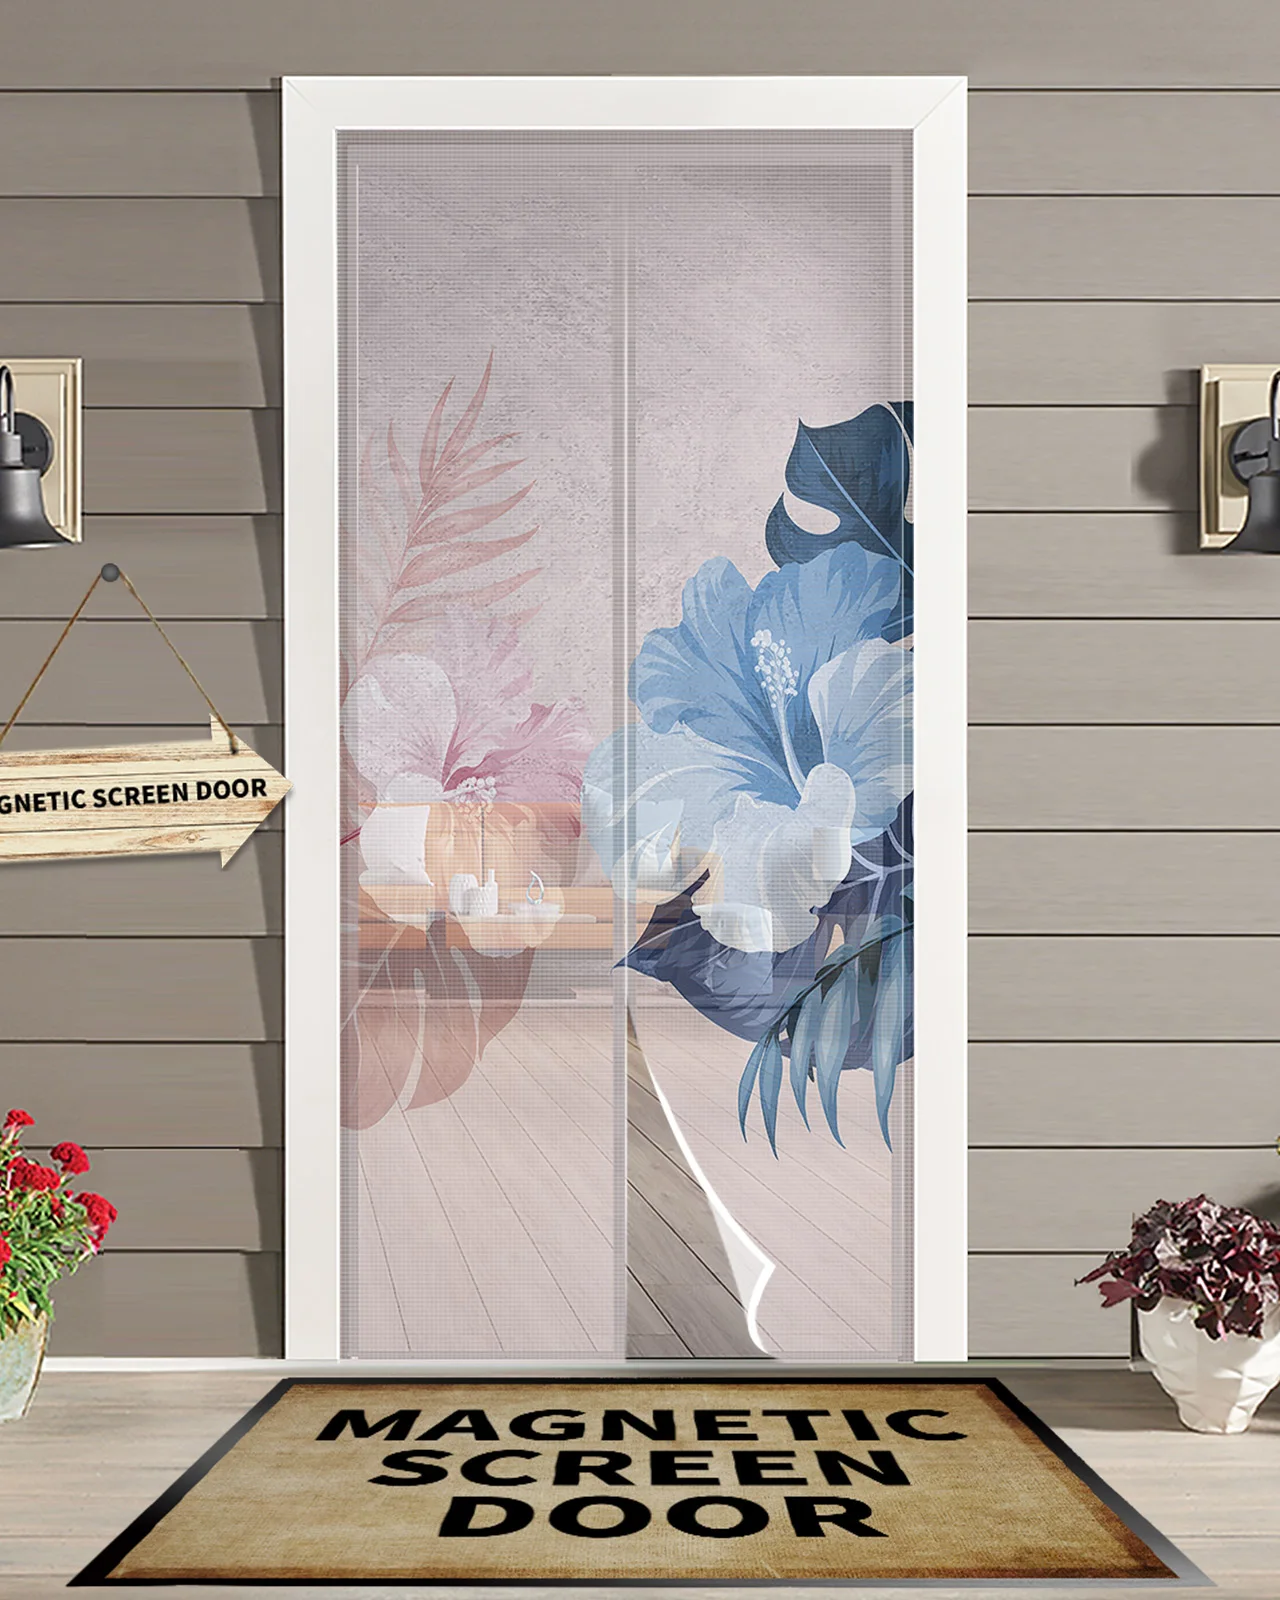 

Гибискус лист свежий Анти Москитная Марля дверная занавеска магнитный дверной экран для спальни летняя дверь оконный экран s